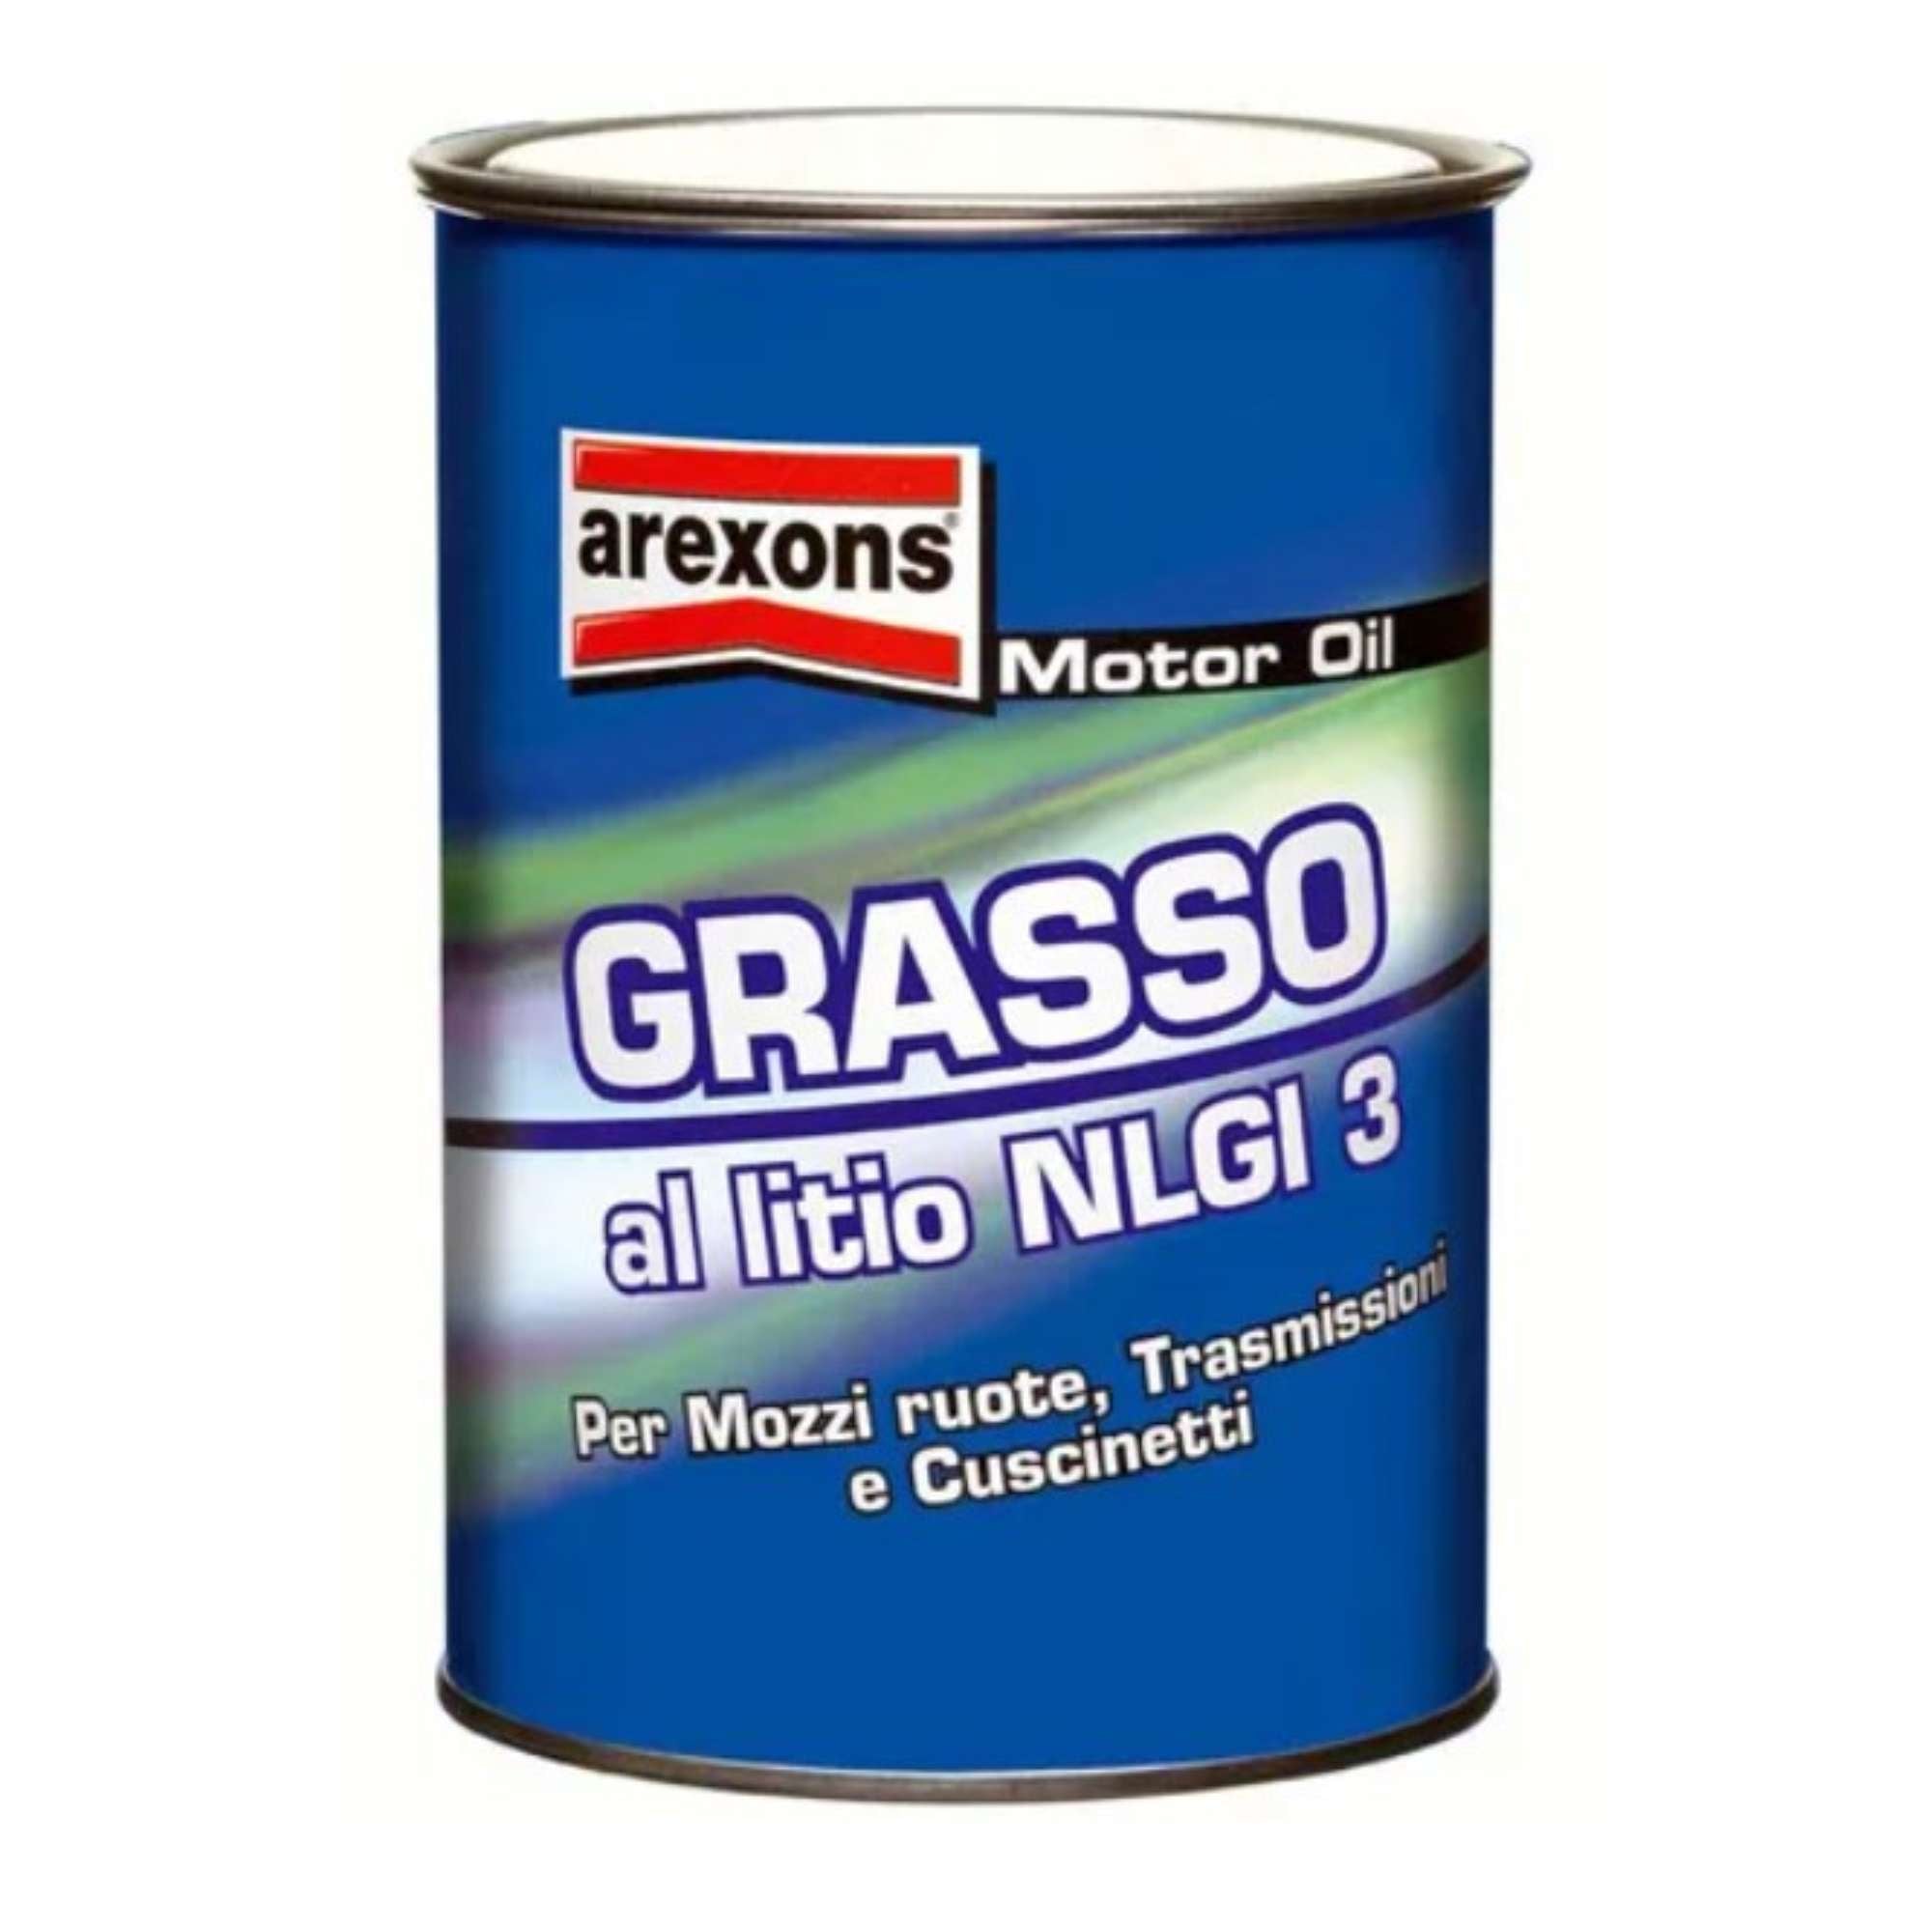 Grasso lubrificante speciale multiuso al litio NLG2 20Kg - Arexons 4259